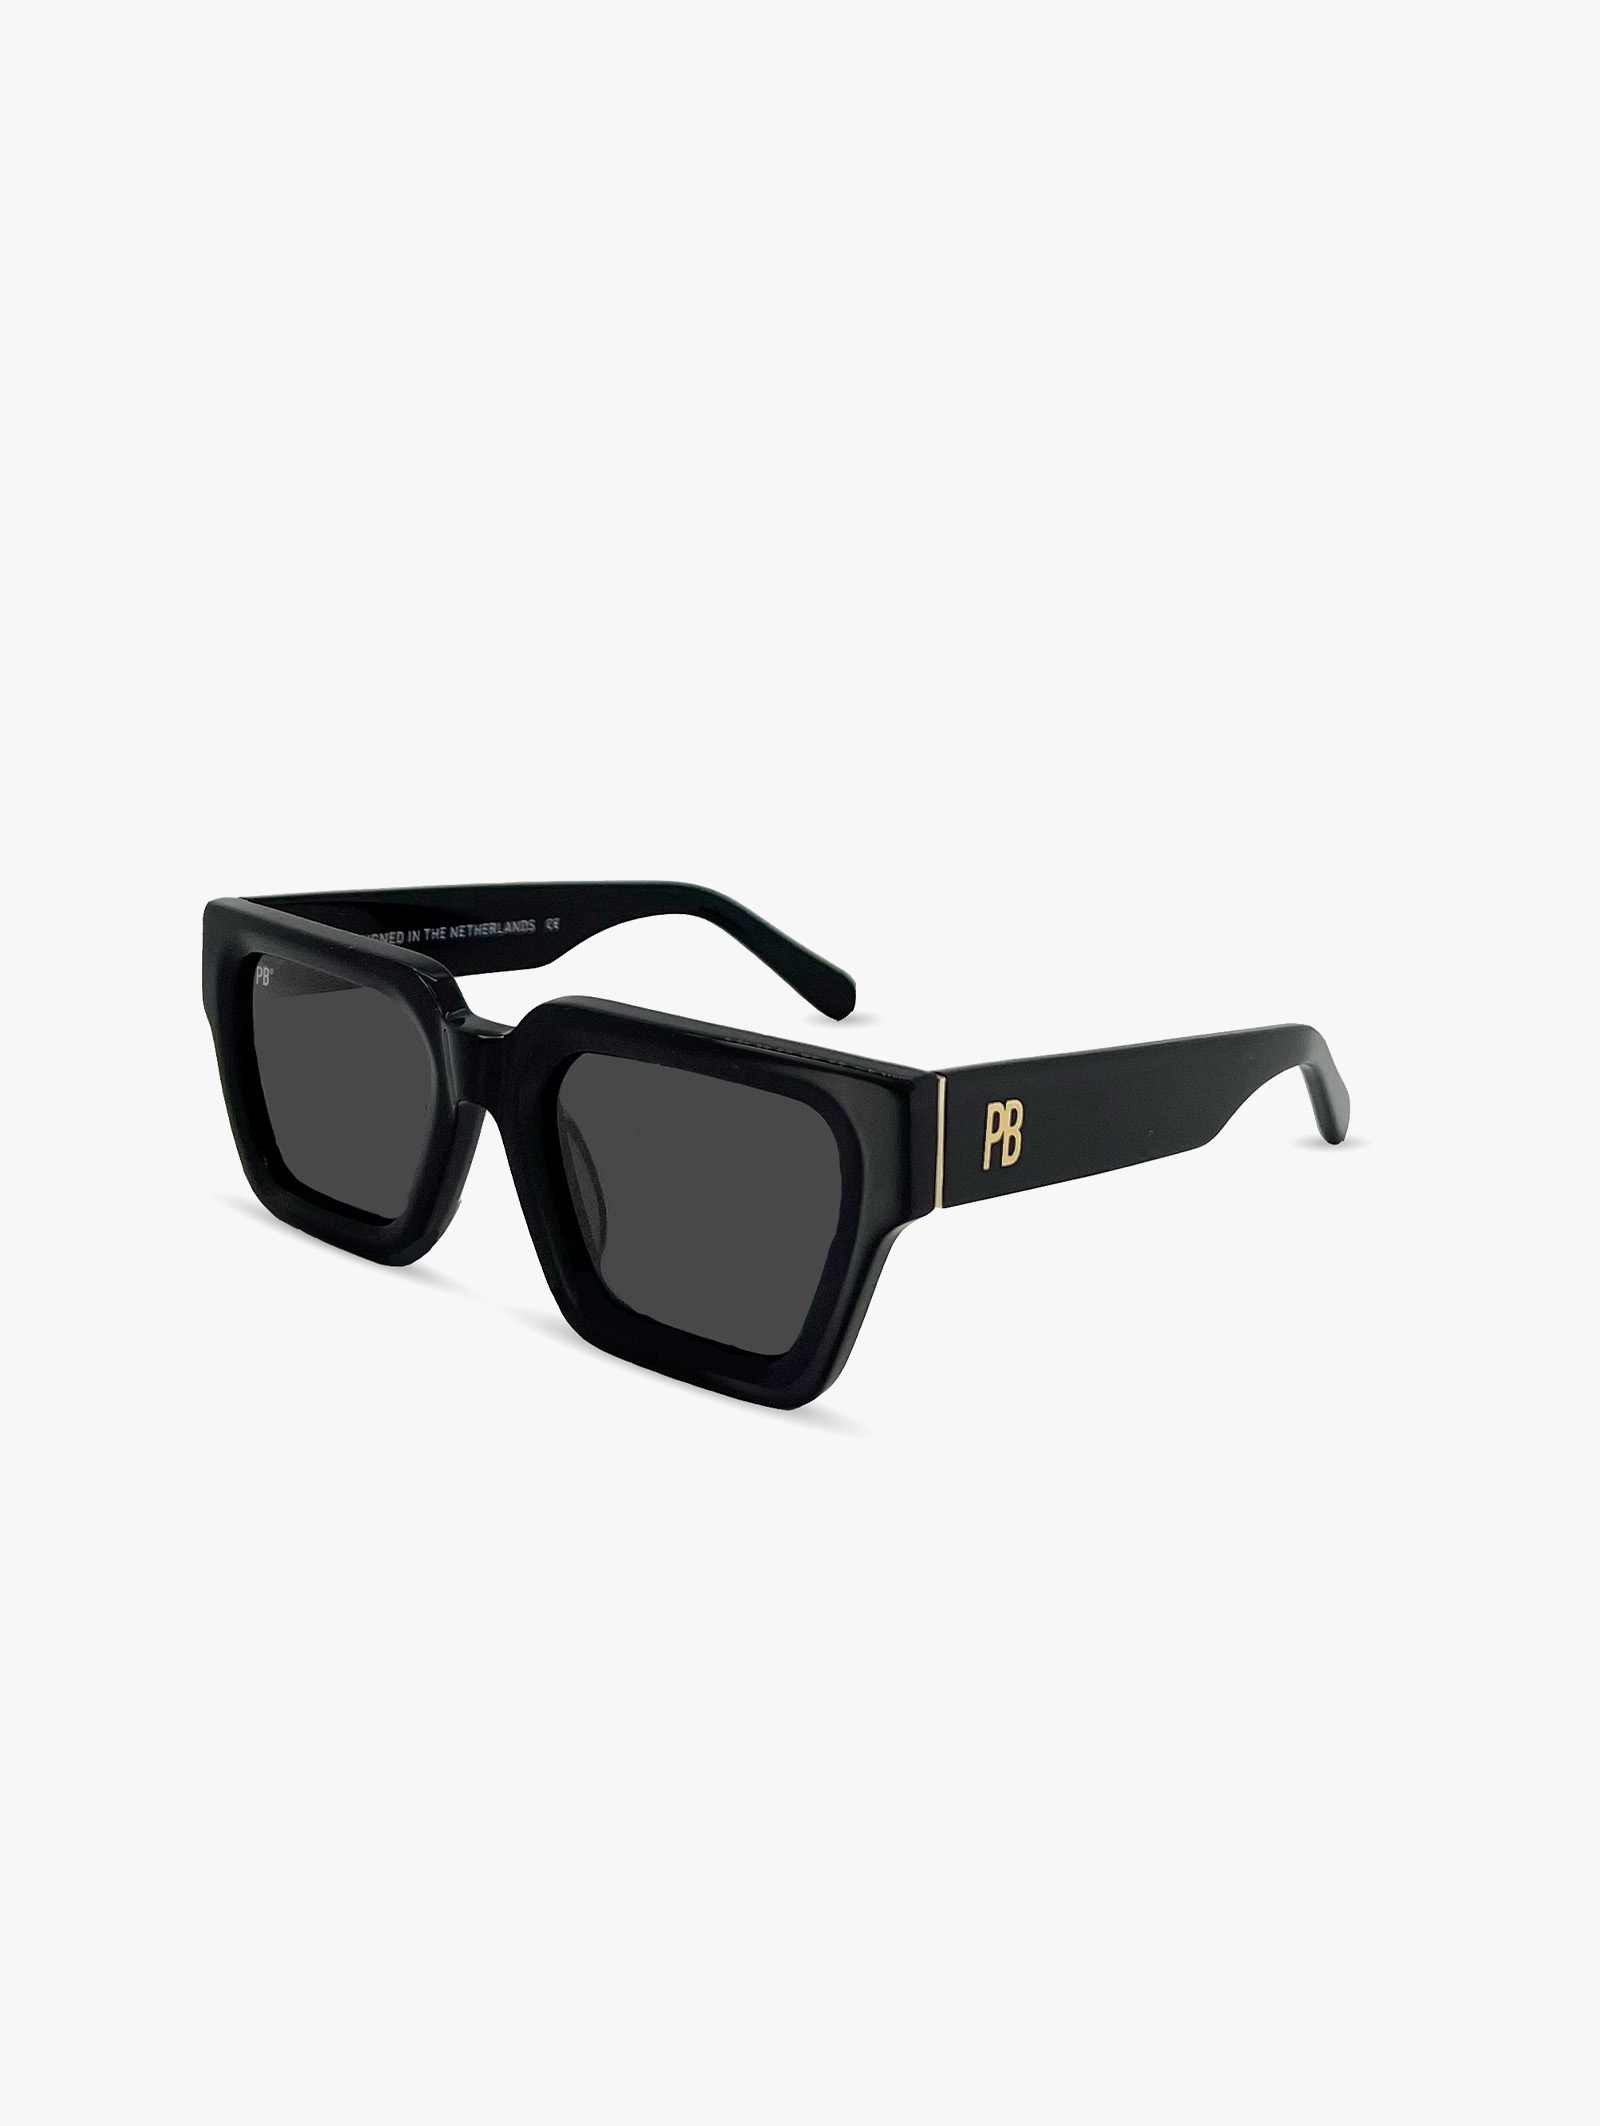 Stijlvolle premium zwarte zonnebril van PB Sunglasses geschikt voor dames en heren